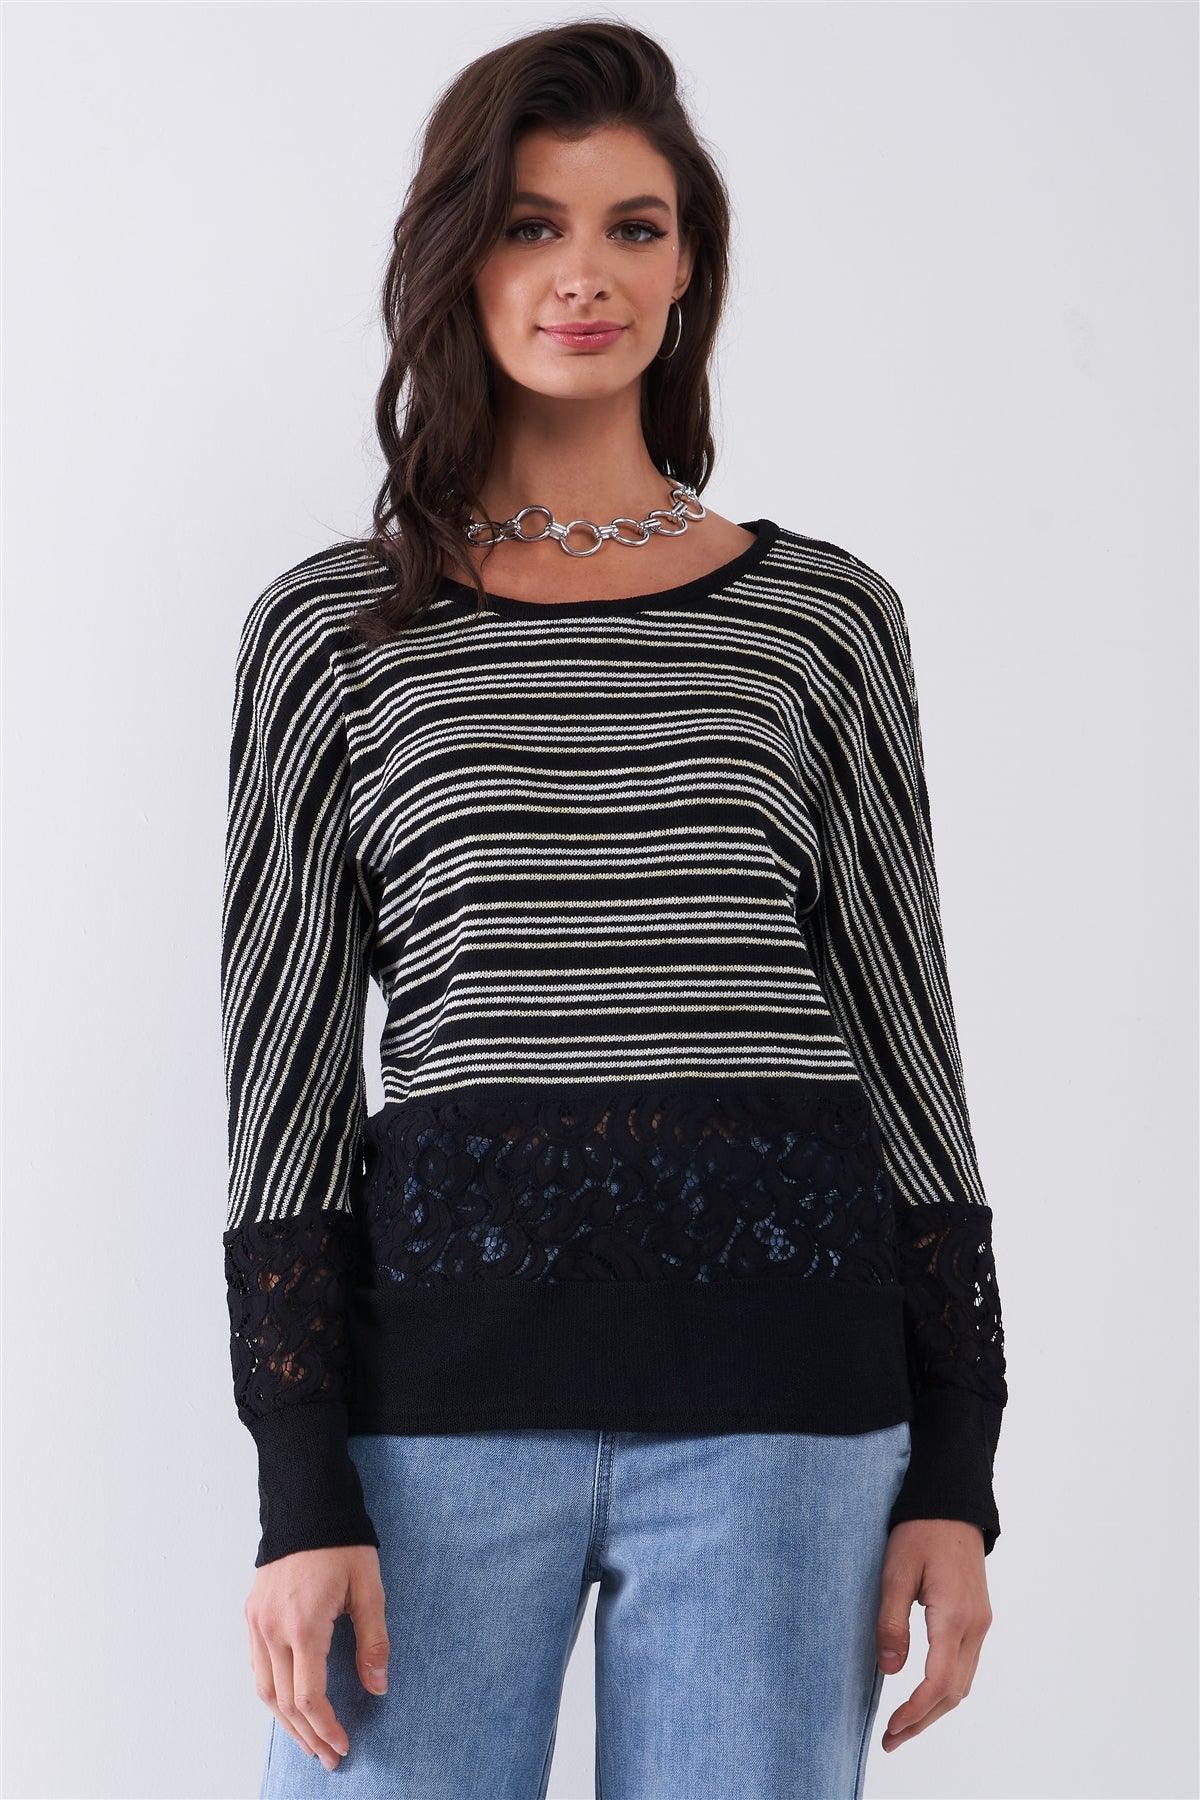 Black Striped Glitter Weave Crochet Trim Detail Long Sleeve Sweater Top /1-1-2-1